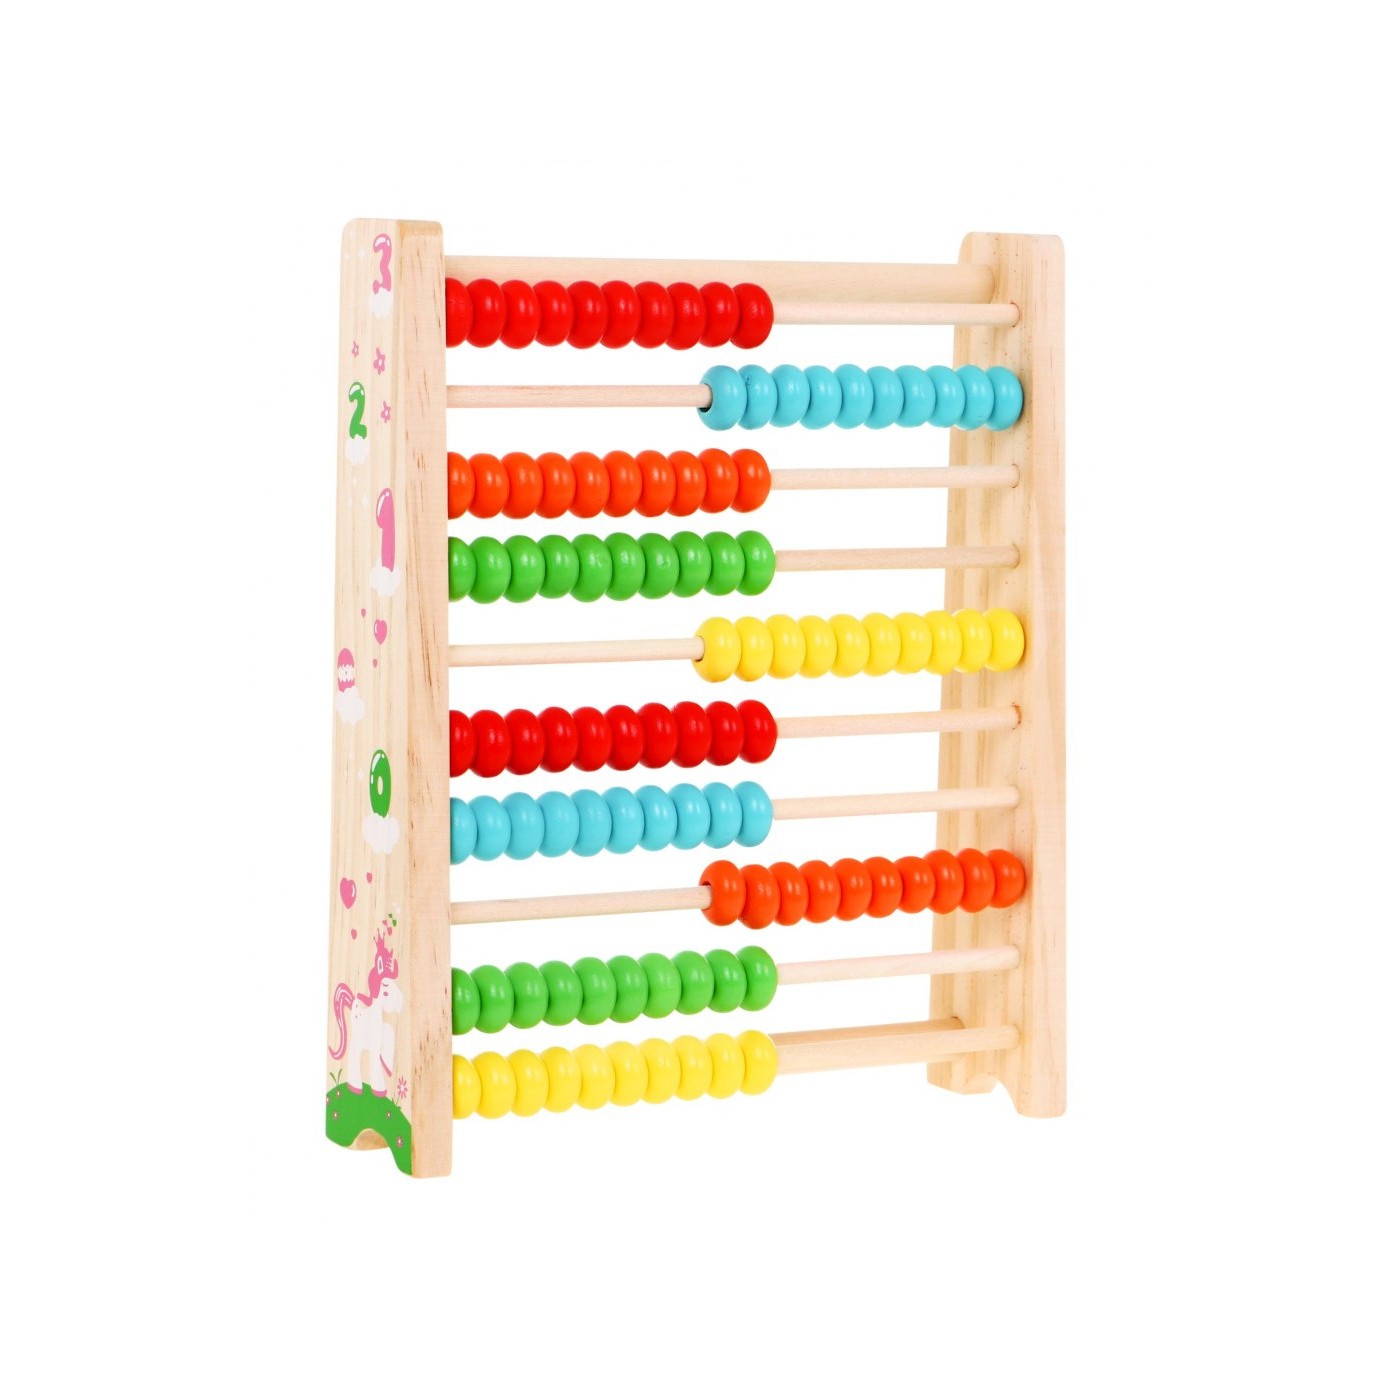 Drewniane liczydło dla dzieci 3+ Nauka liczenia do 100 Kolorowe kulki